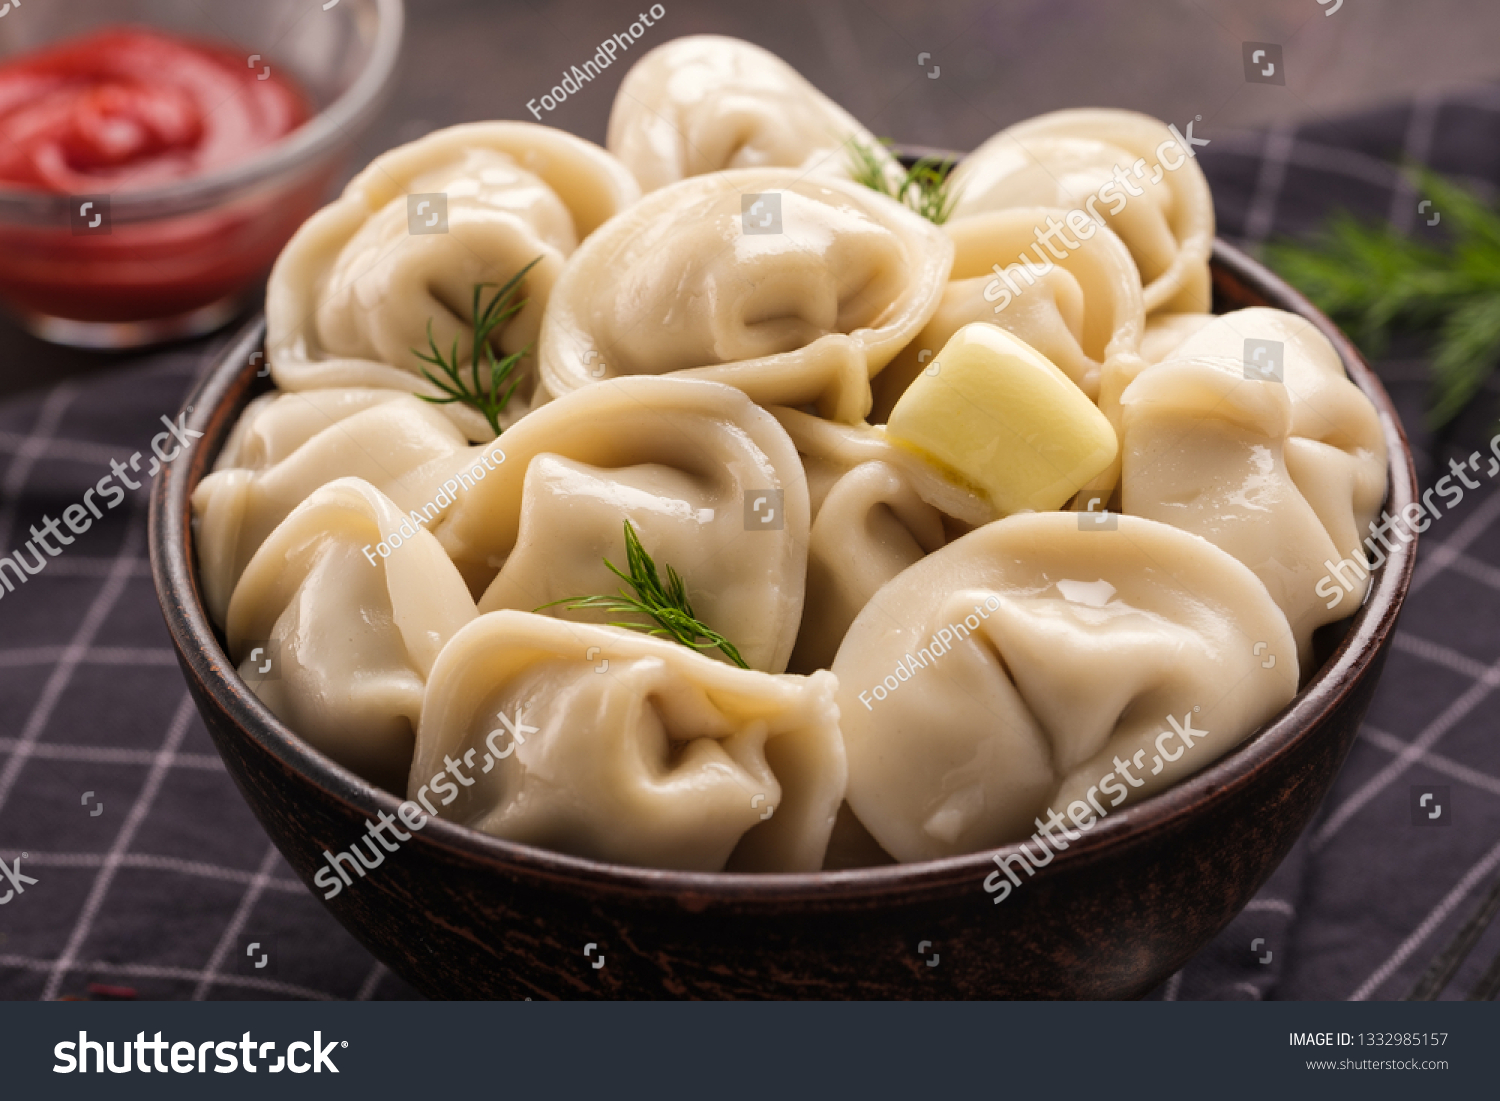 Homemade meat dumplings - russian pelmeni. Dumplings, filled with meat, ravioli. Dumplings with filling. Close-up. #1332985157